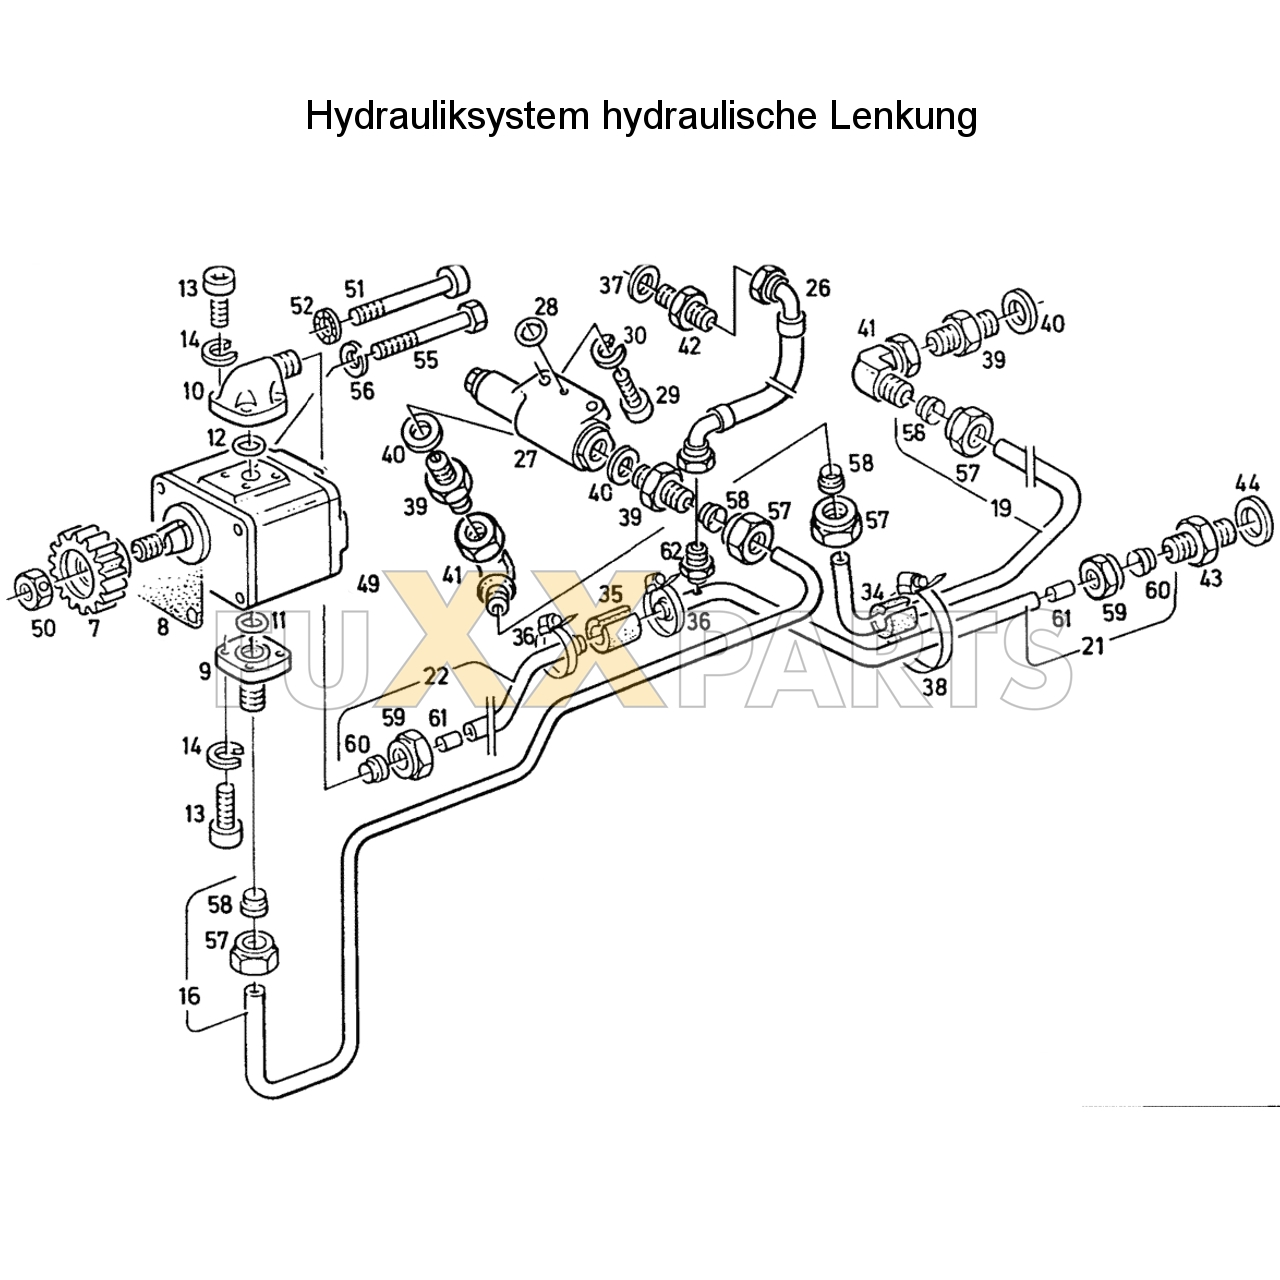 D 6007 Hydrauliksystem hyd. Lenkung